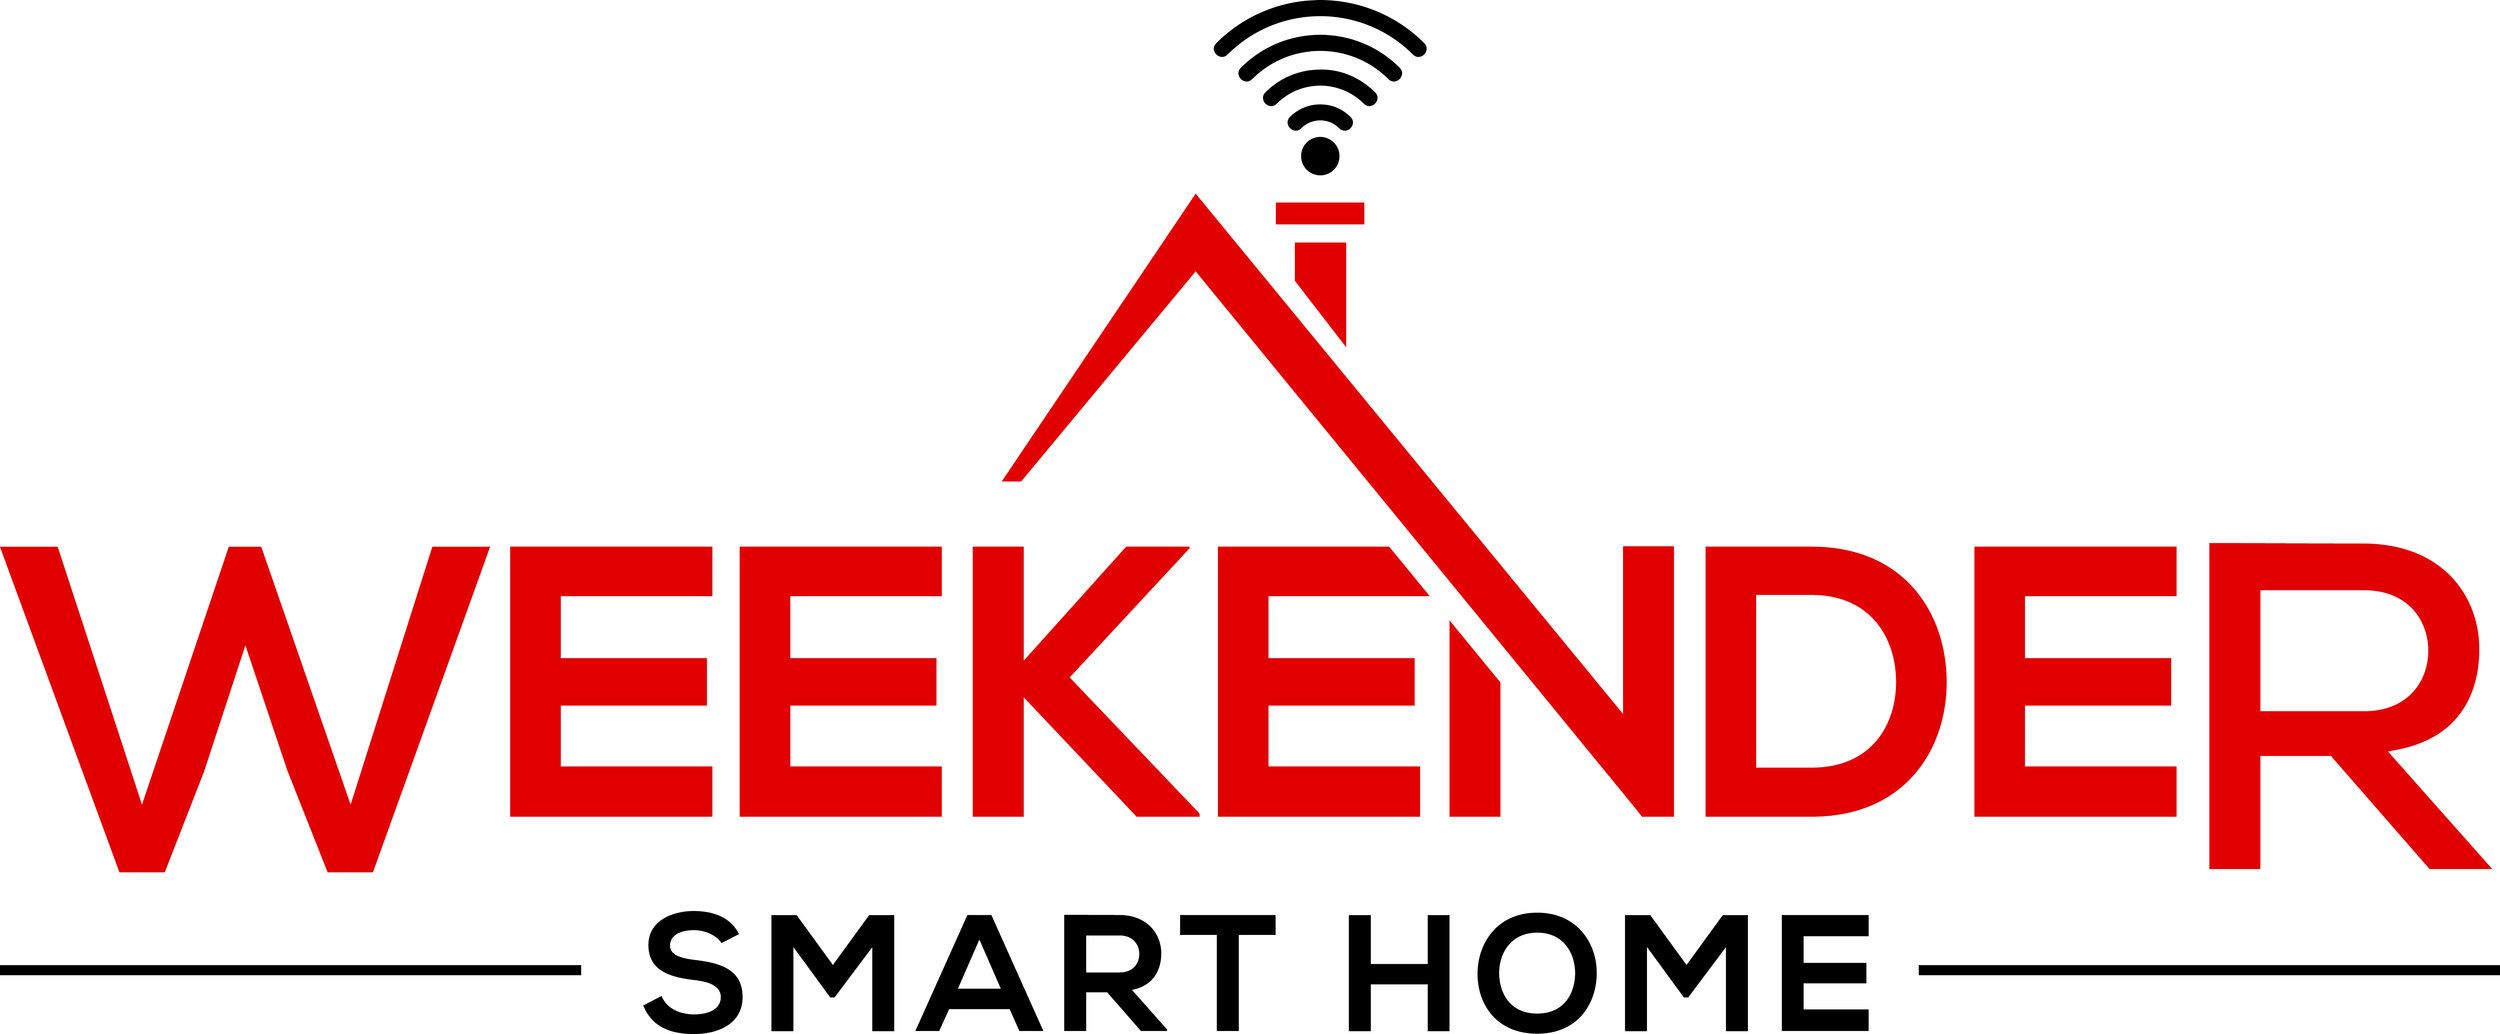 Weekender Smart Home, LLC